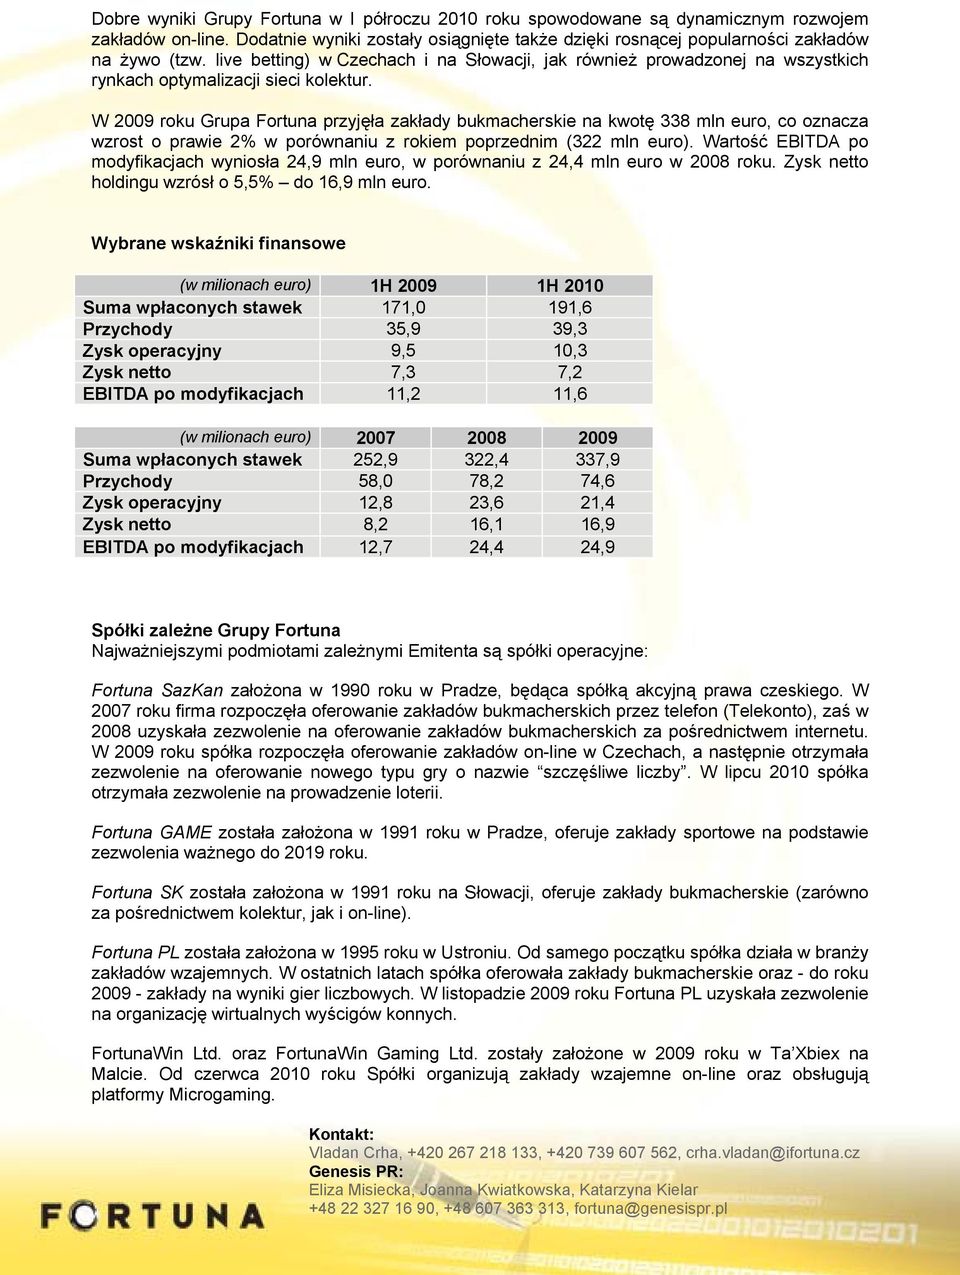 W 2009 roku Grupa Fortuna przyjęła zakłady bukmacherskie na kwotę 338 mln euro, co oznacza wzrost o prawie 2% w porównaniu z rokiem poprzednim (322 mln euro).